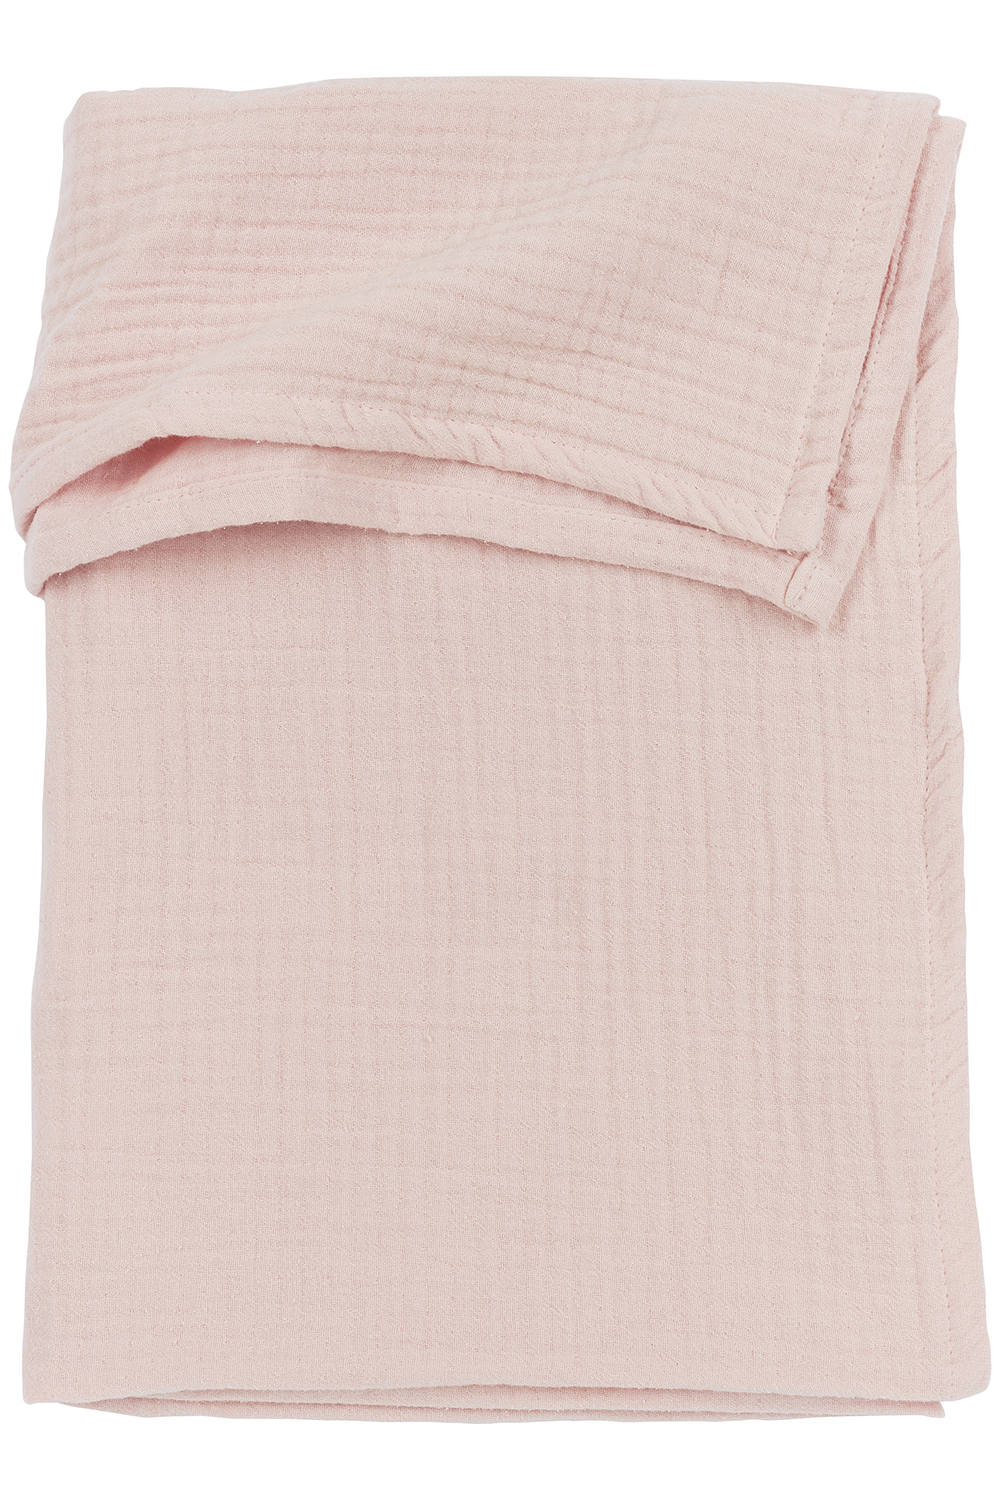 Wieglaken hydrofiel Uni - soft pink - 75x100cm